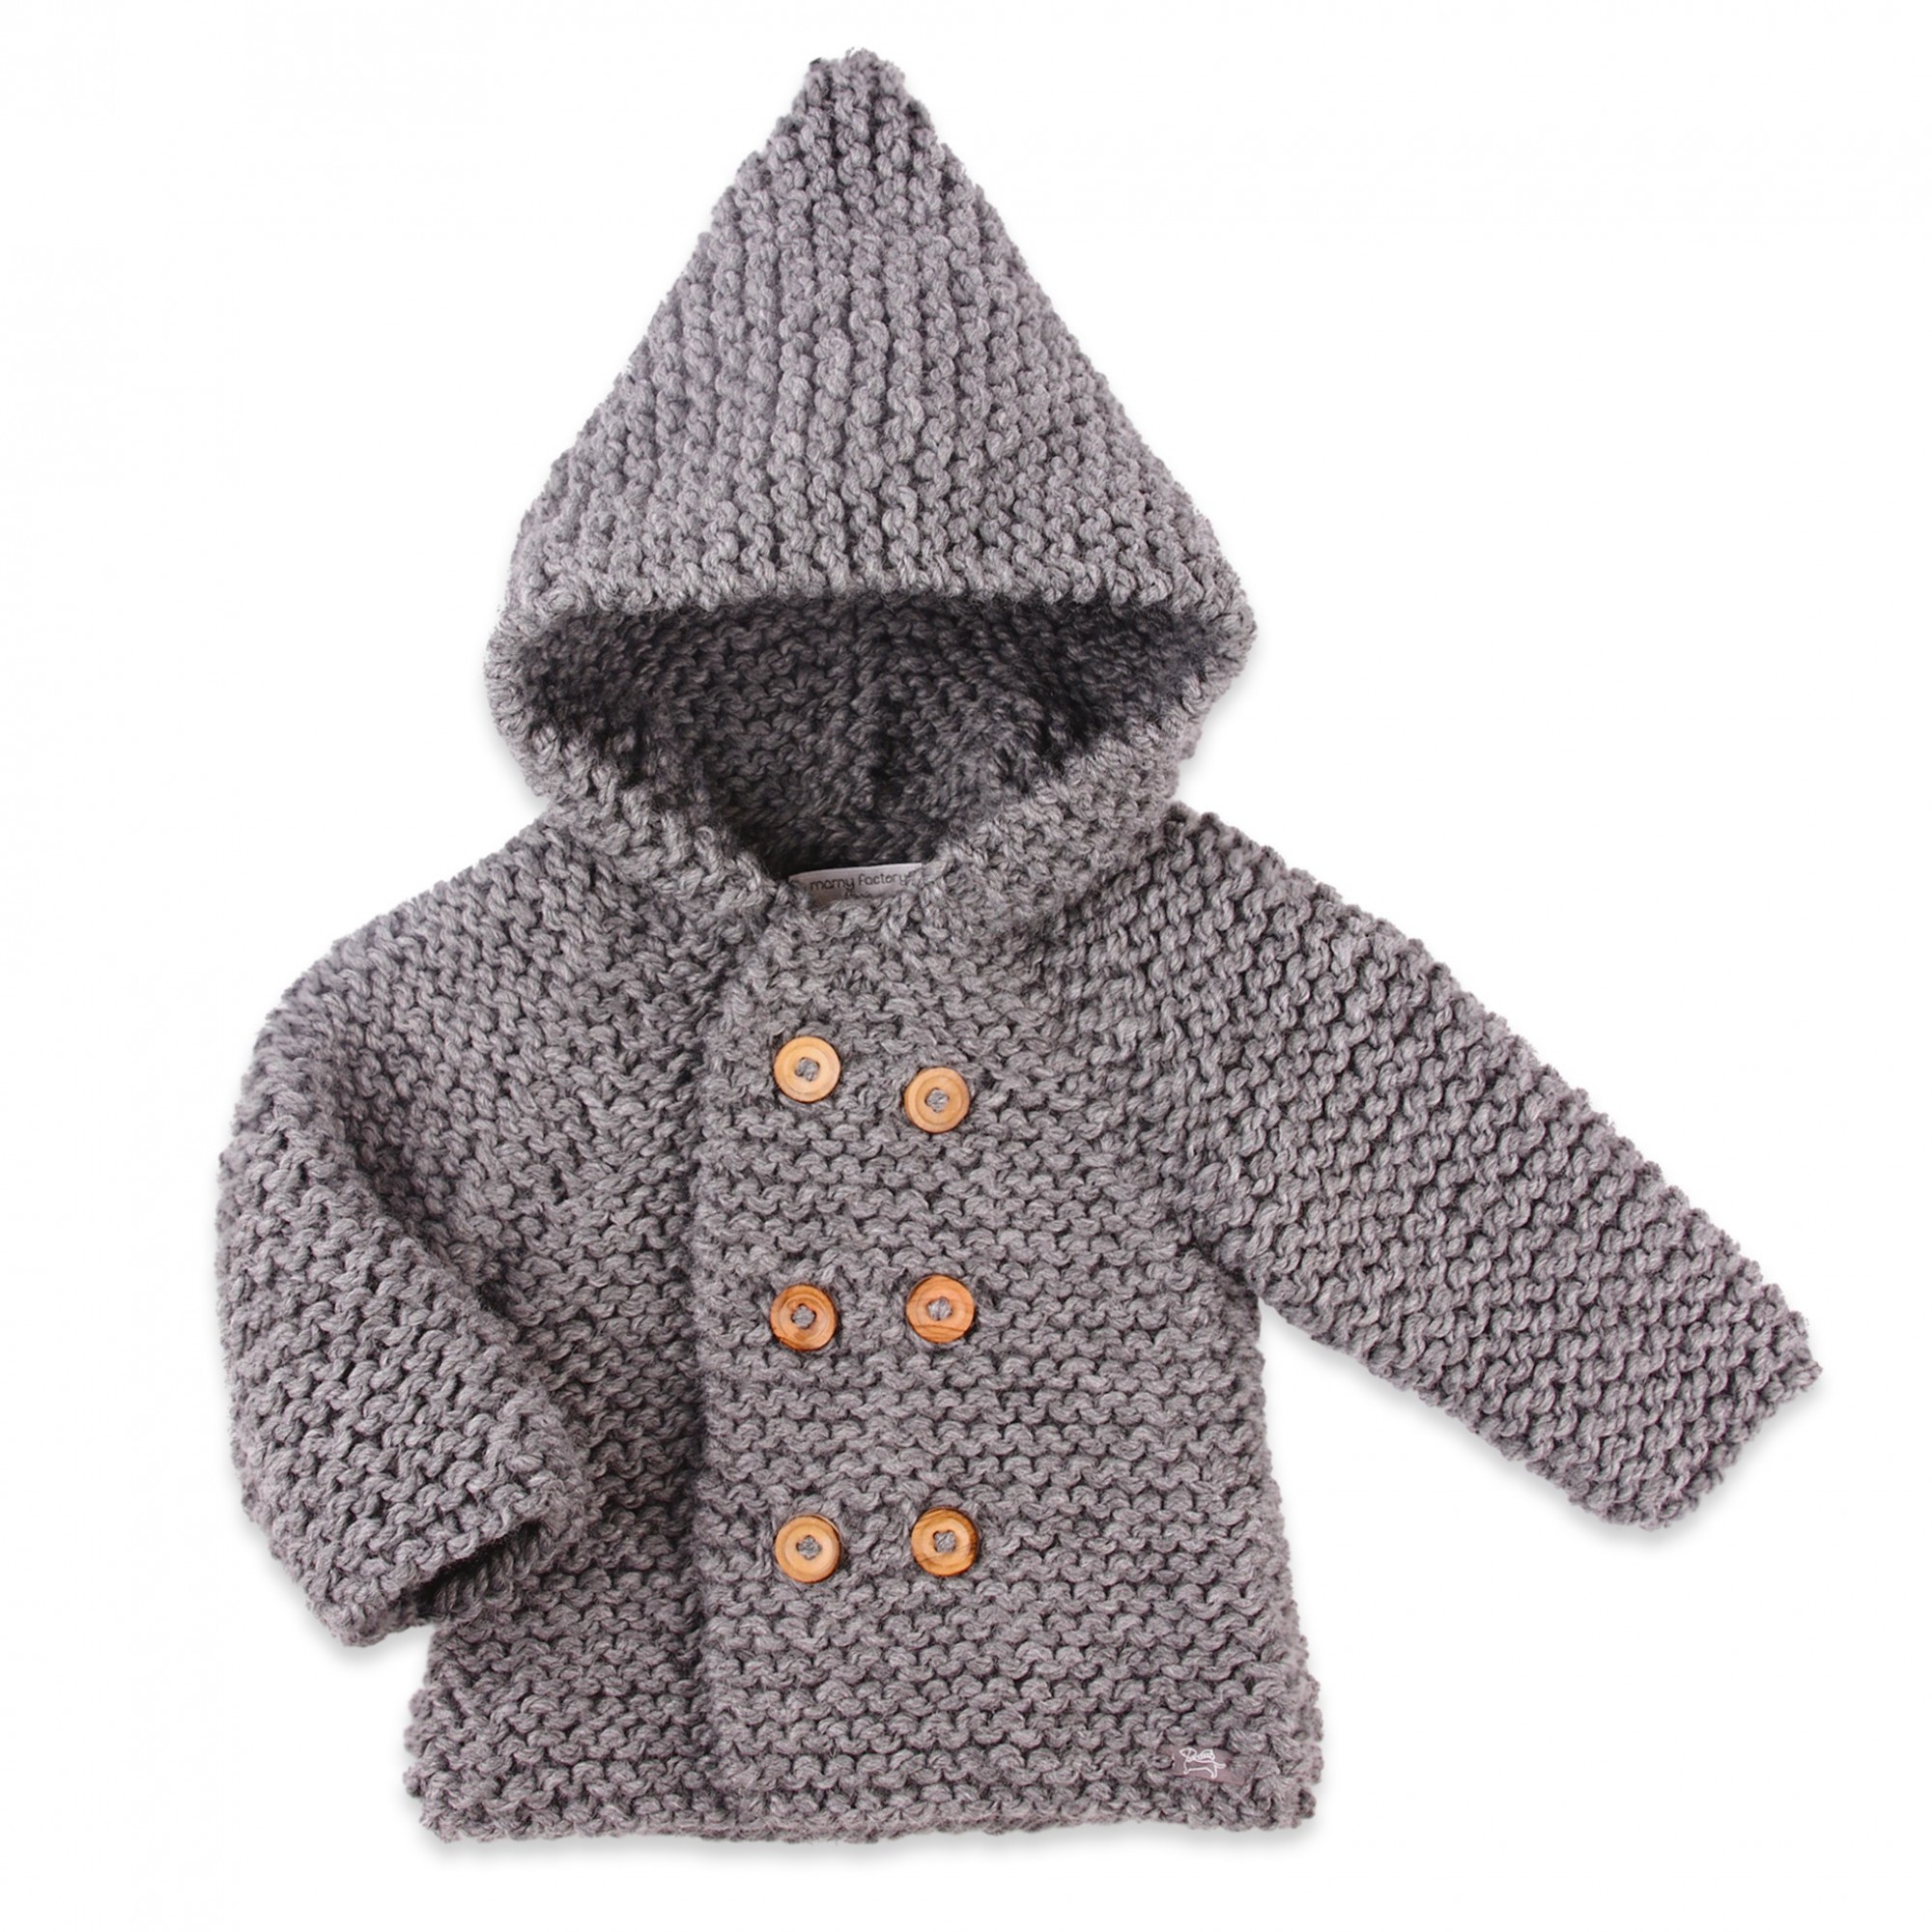 tricoter un manteau bebe